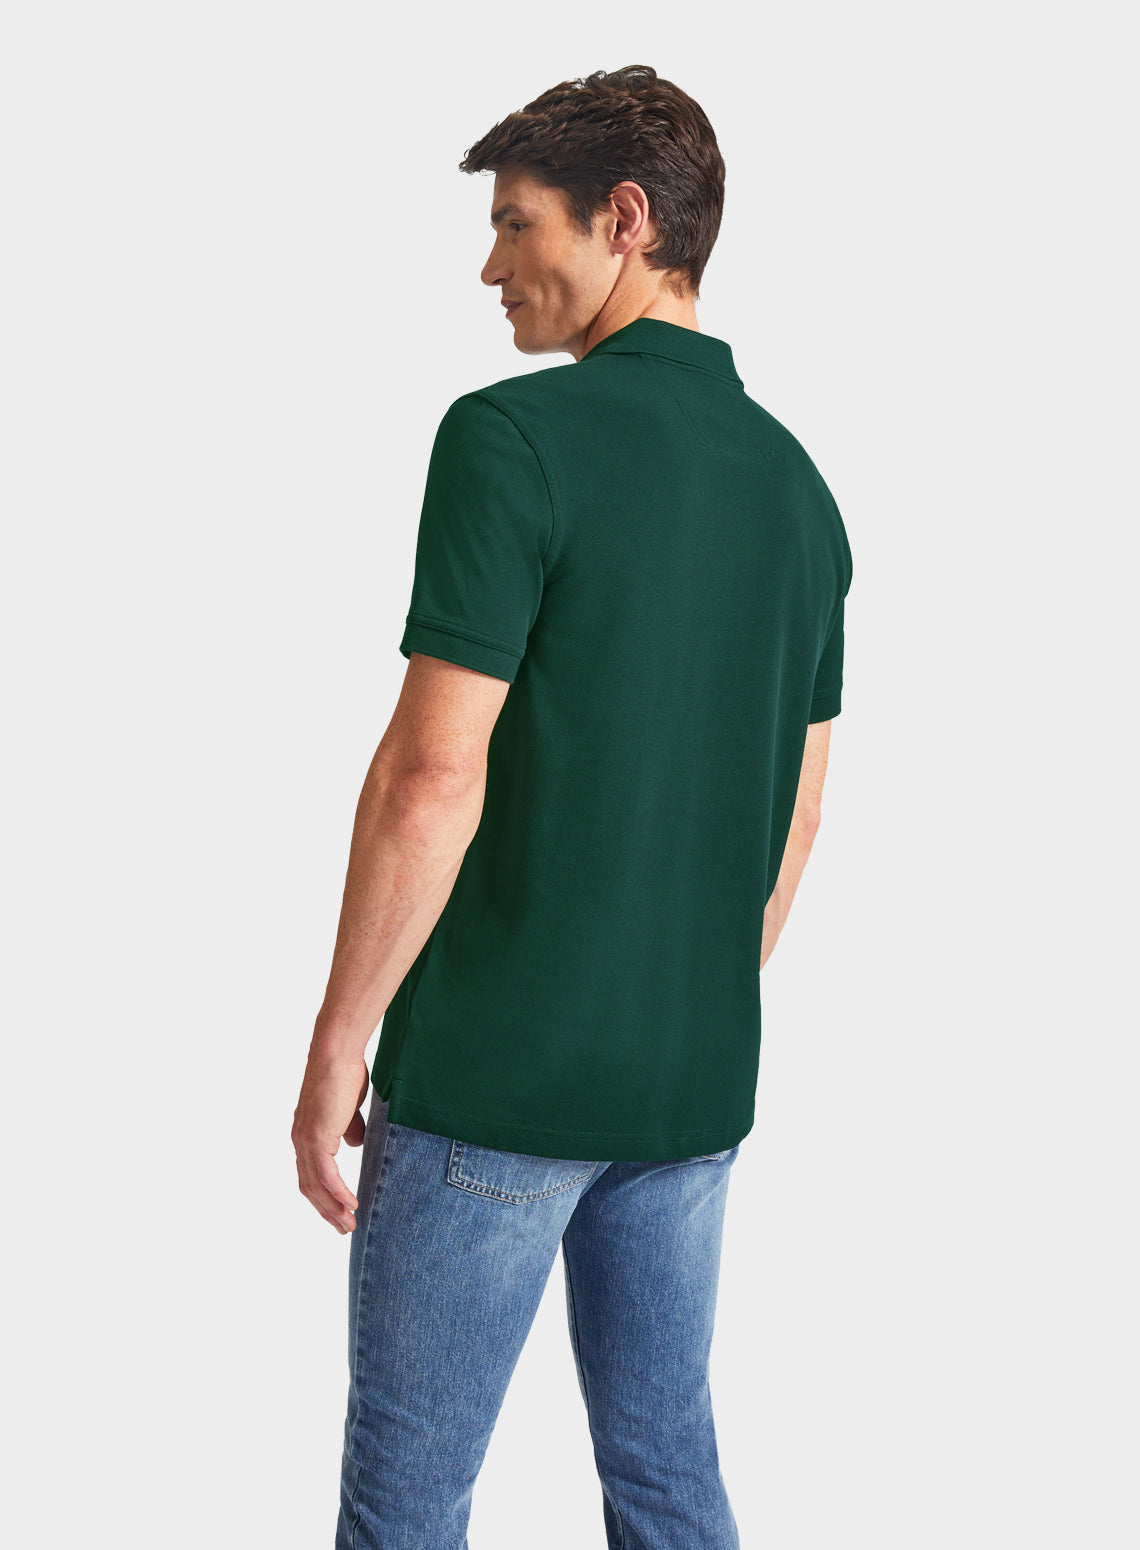 Pique Polo Shirt - Green